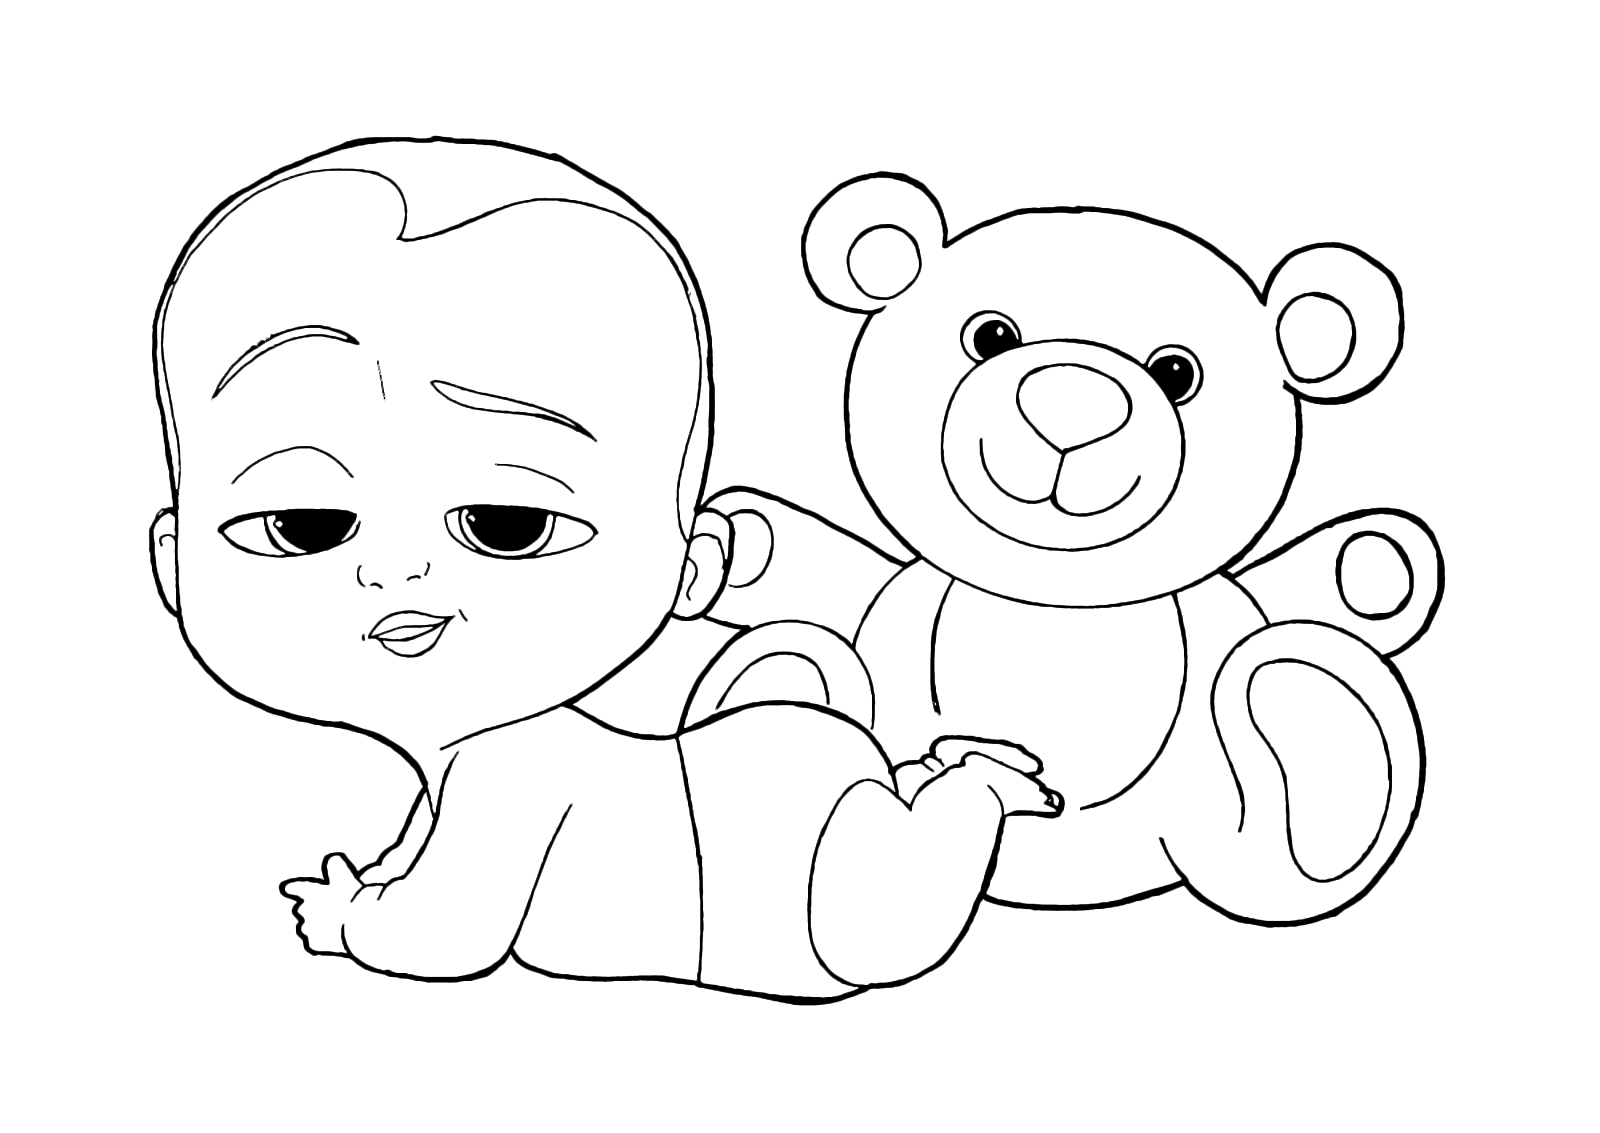 Baby Boss - Baby Boss sdraiato con il suo orsetto